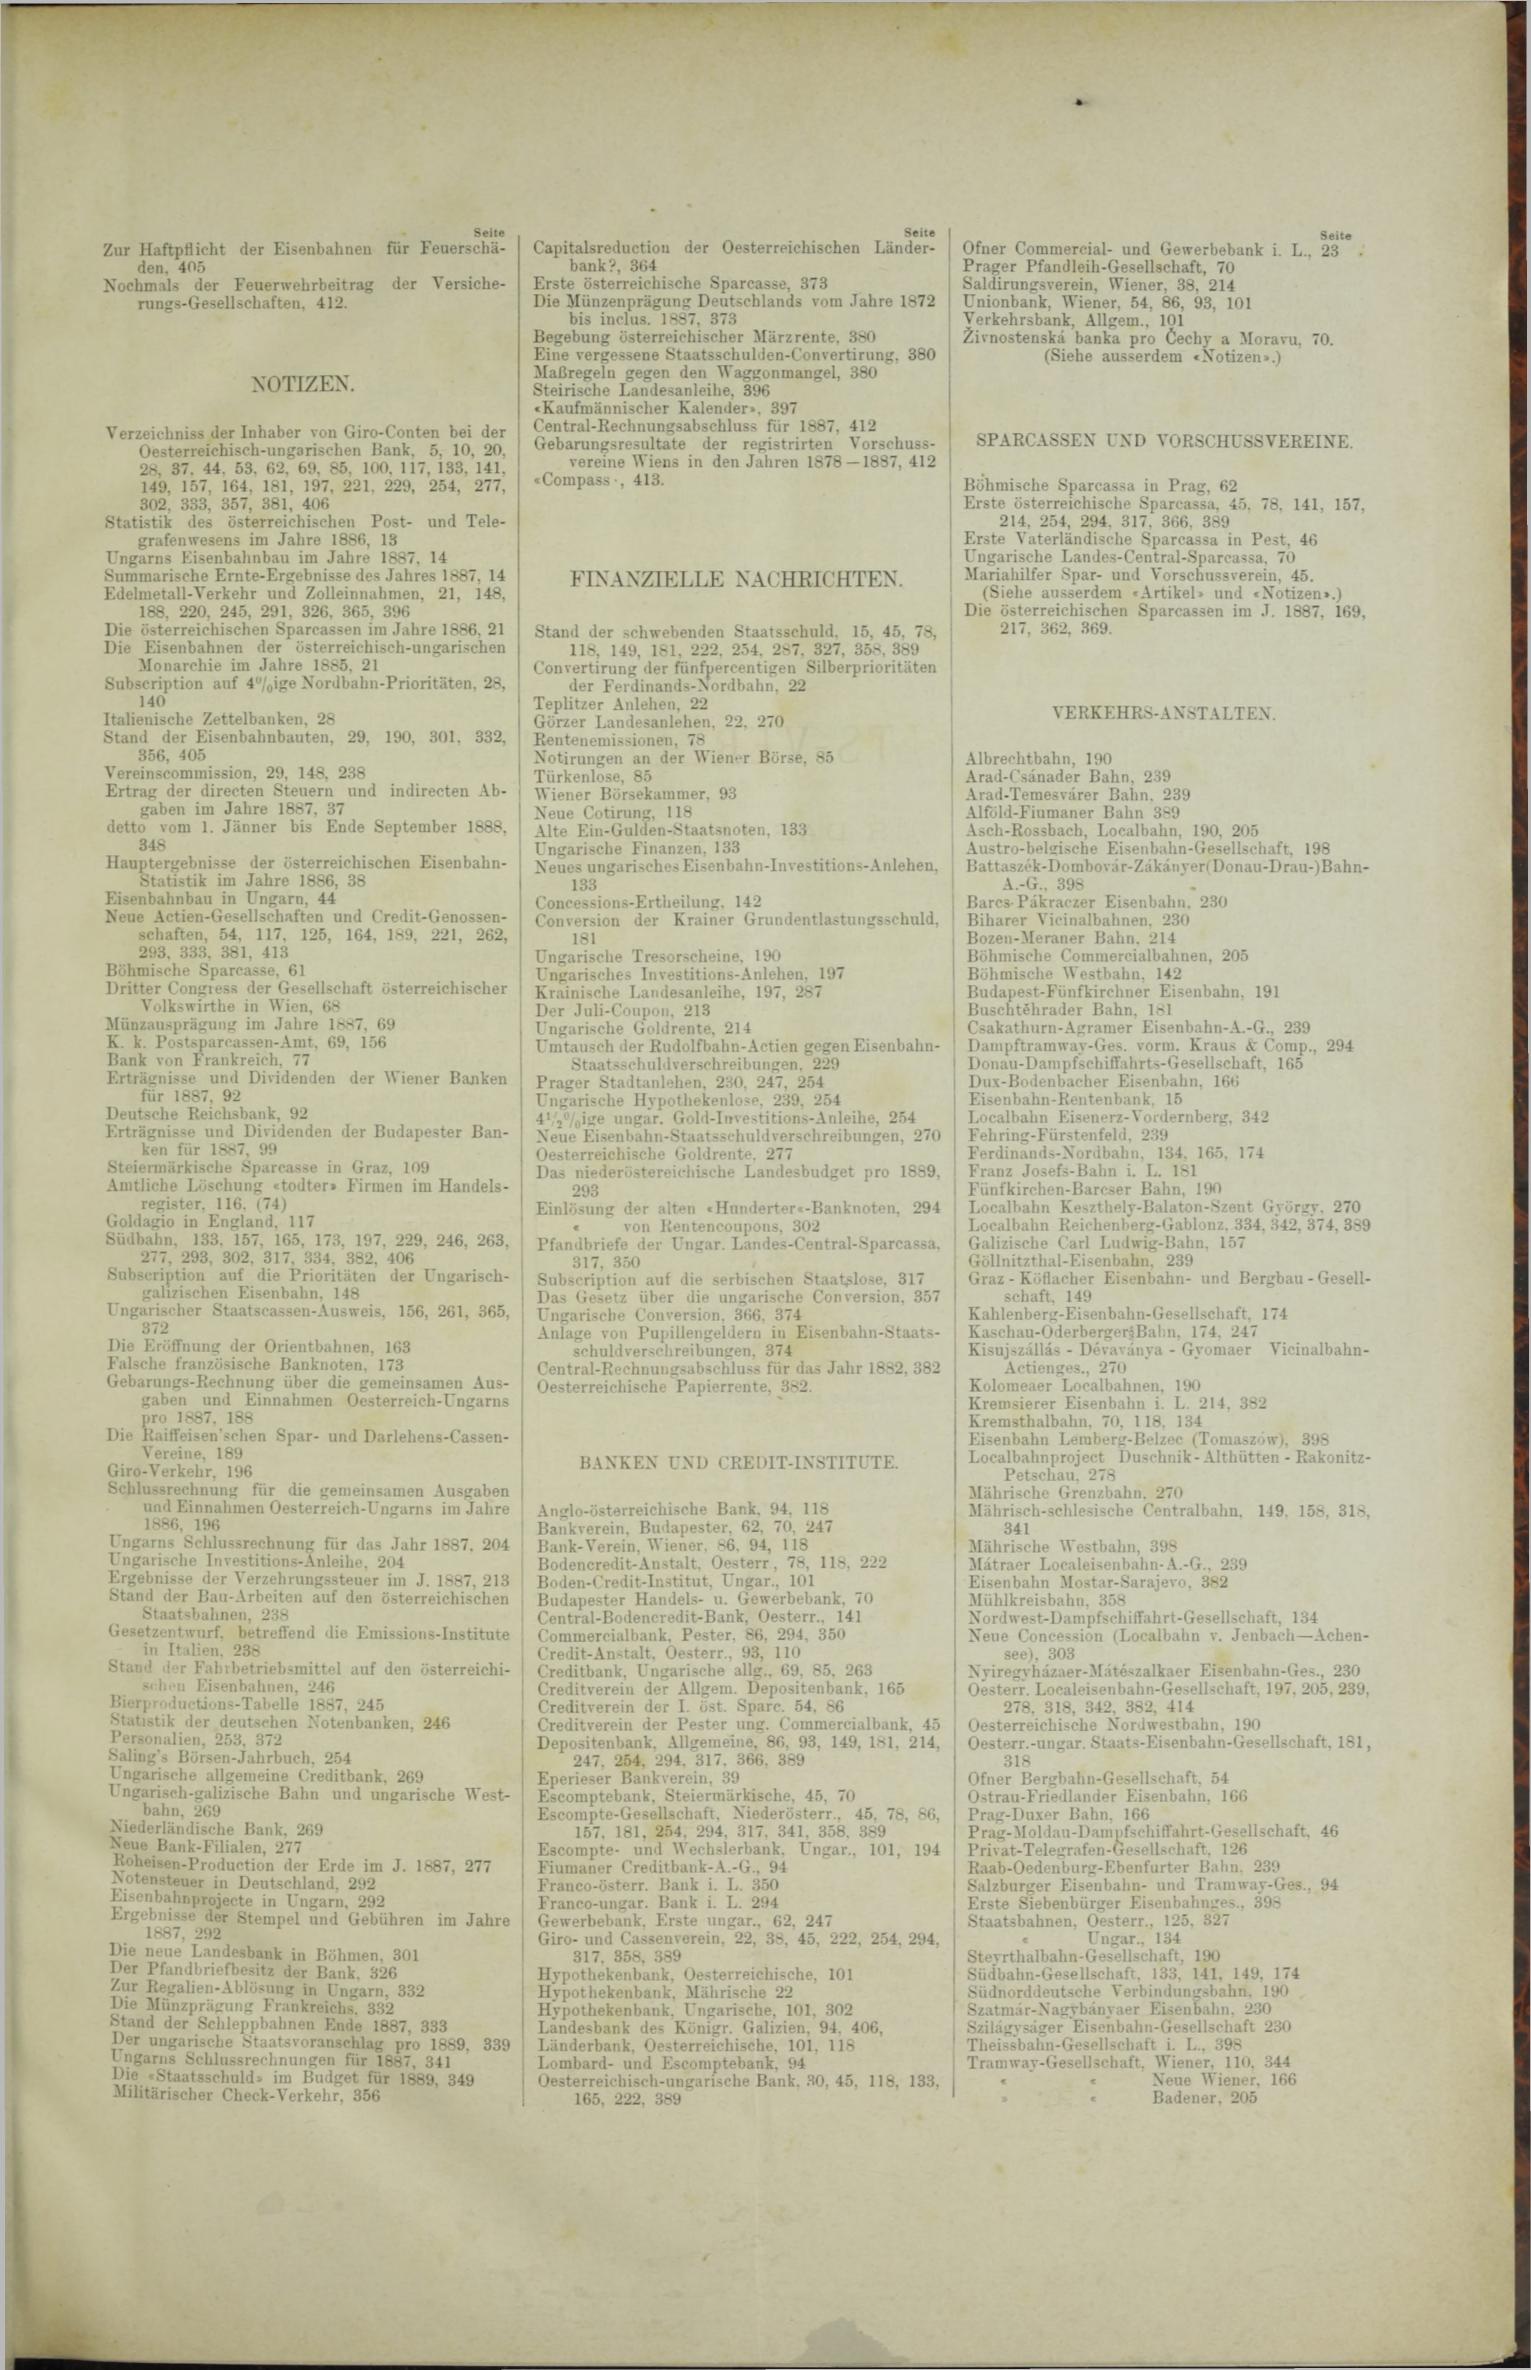 Der Tresor 13.12.1888 - Seite 11